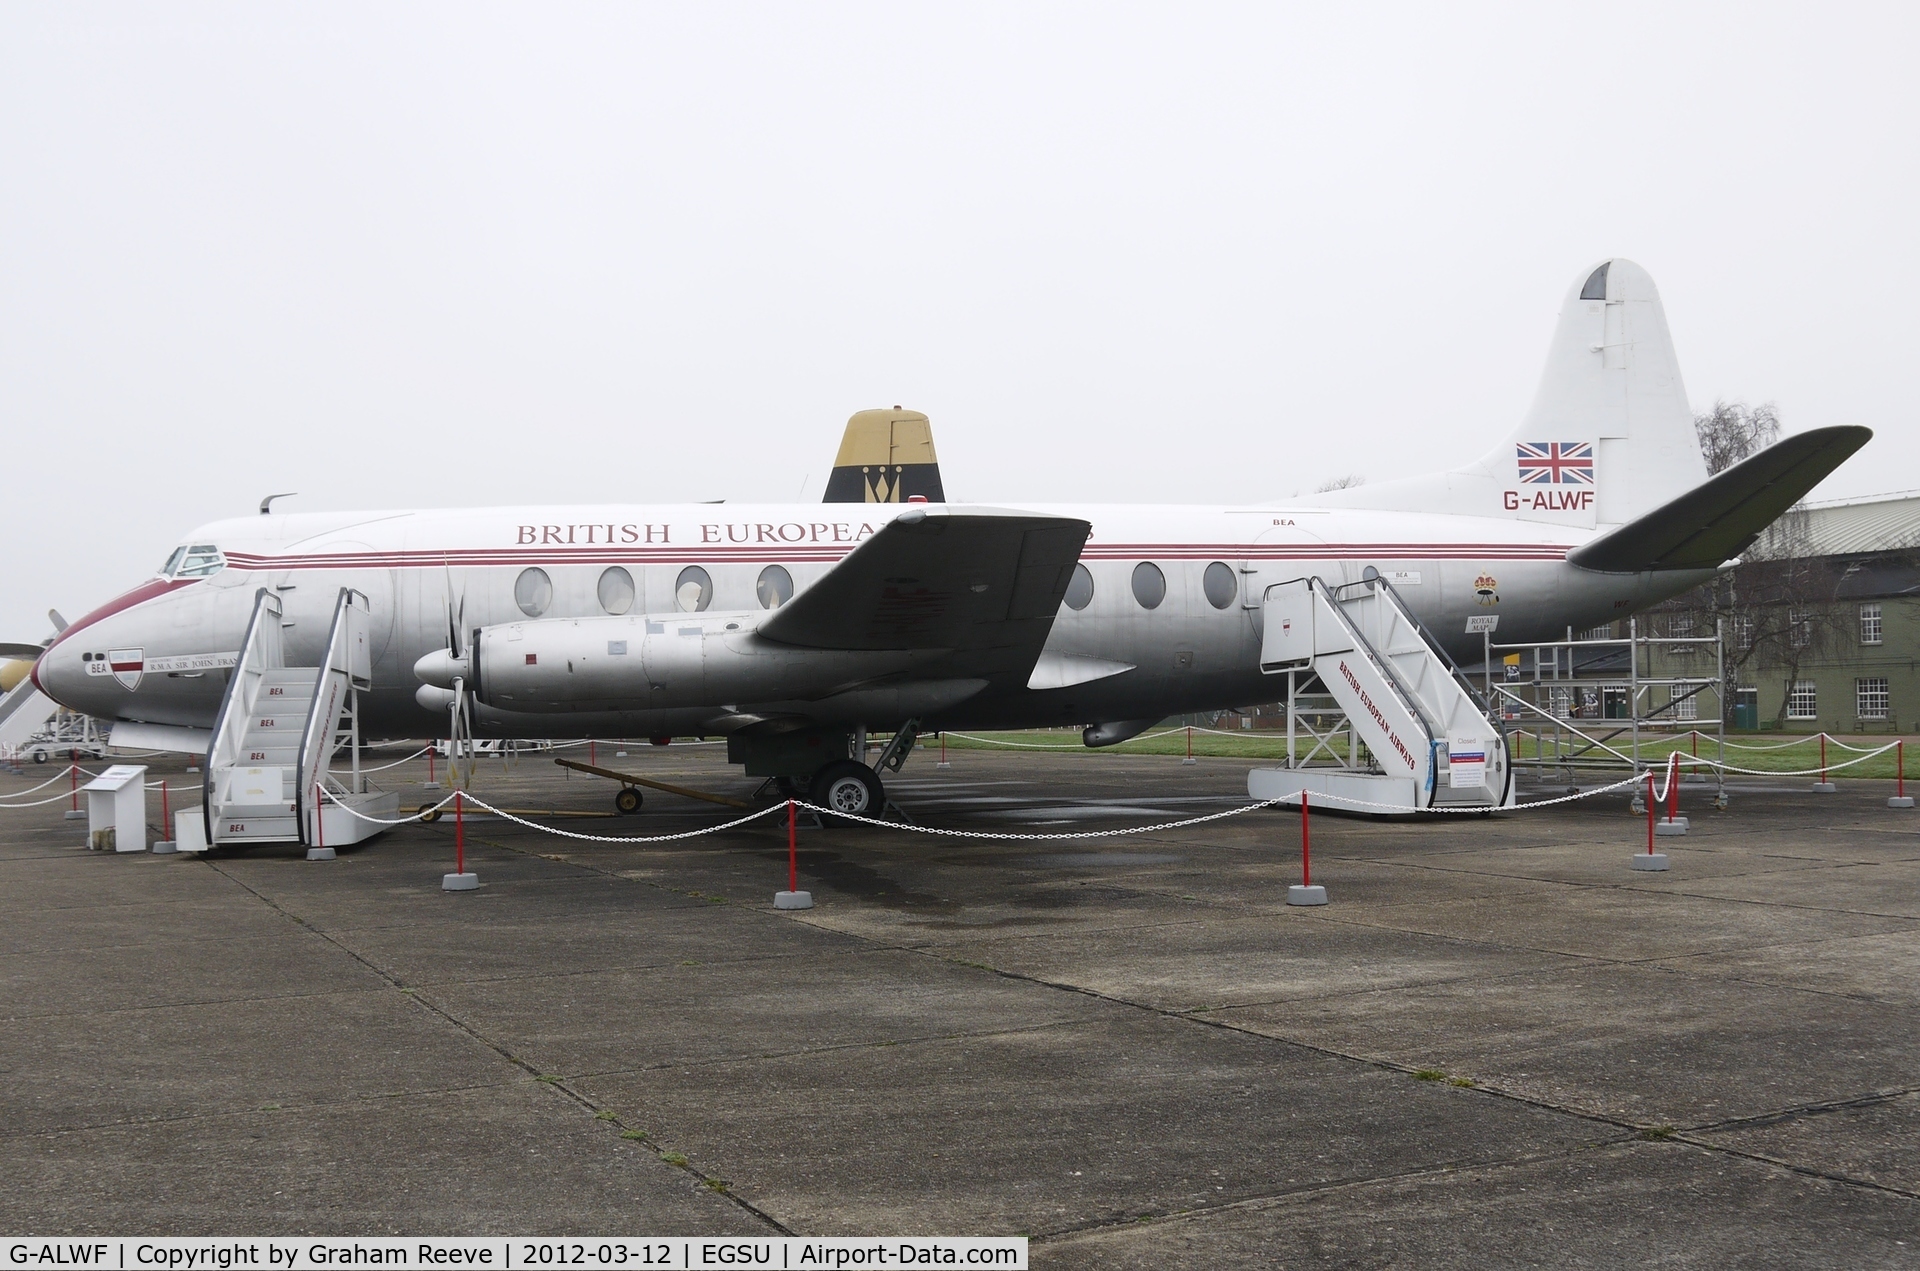 G-ALWF, 1952 Vickers Viscount 701 C/N 005, On display at Duxford.